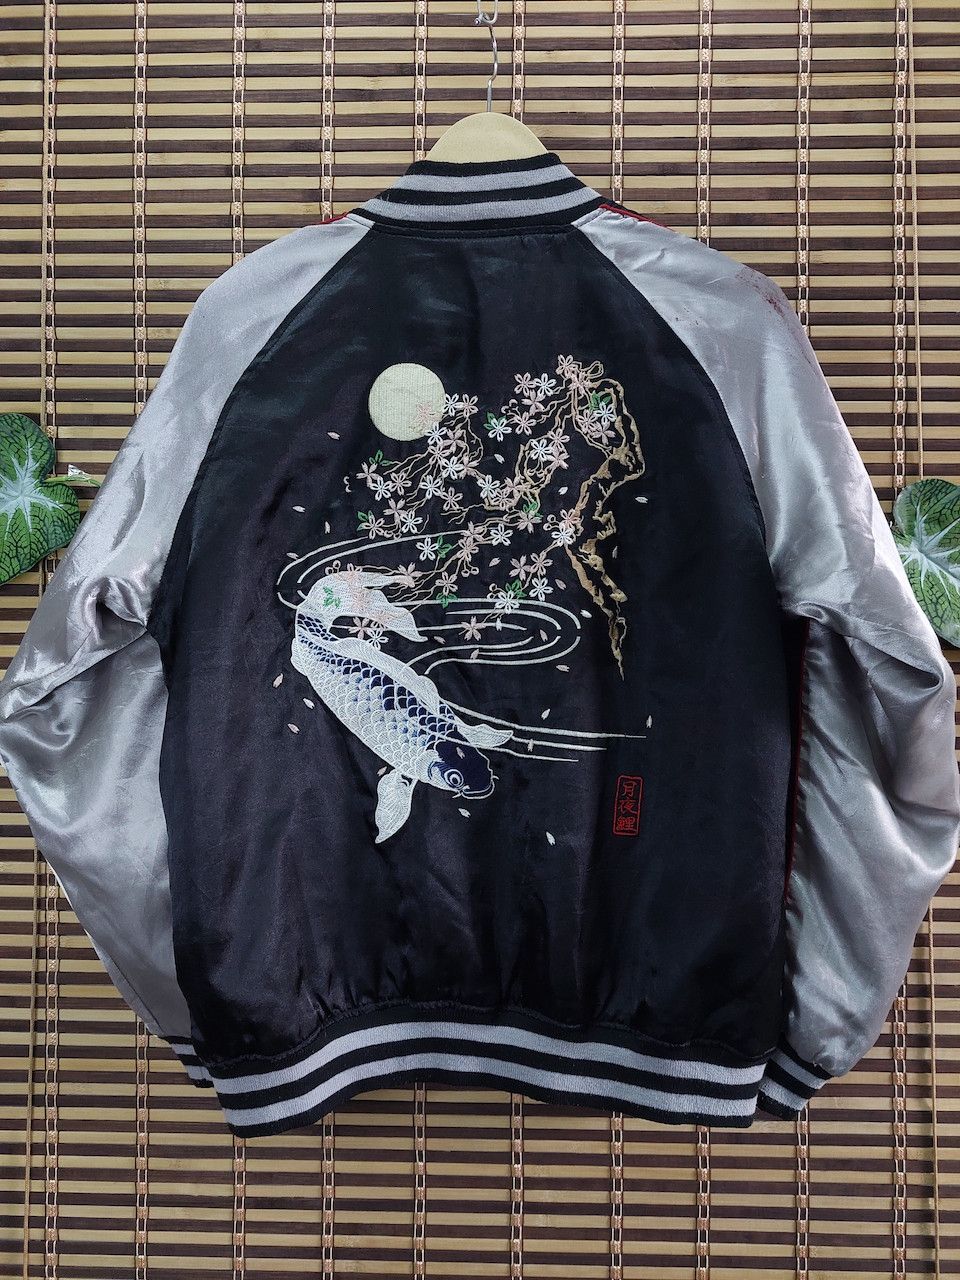 Vintage Sukajan Karakuri Jacket Koi Fish Embroidery Japan - 13